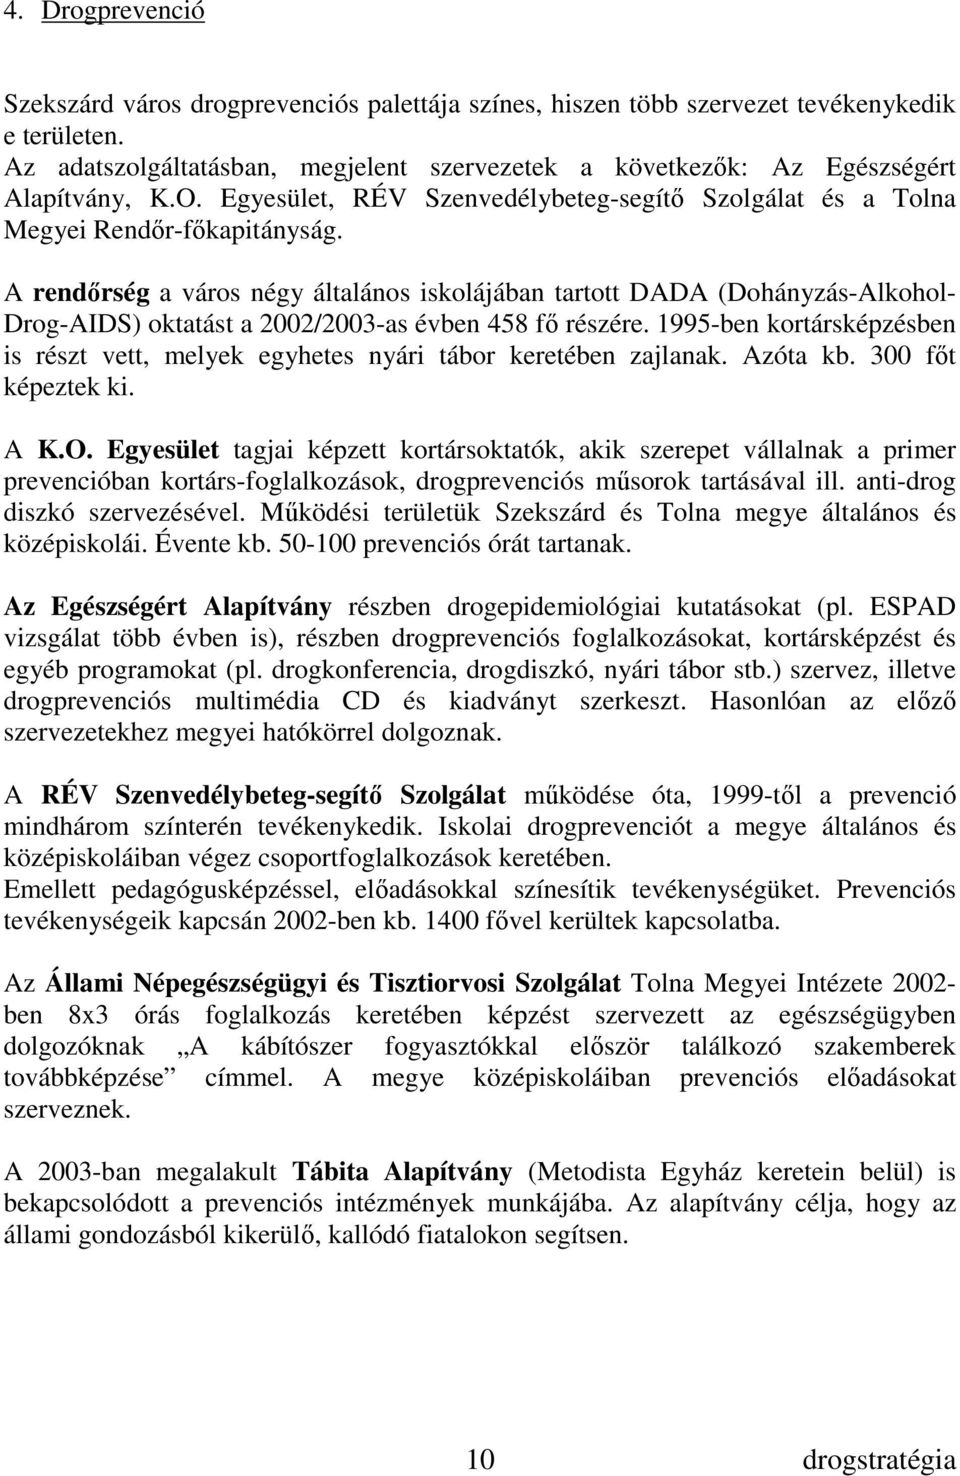 A rendırség a város négy általános iskolájában tartott DADA (Dohányzás-Alkohol- Drog-AIDS) oktatást a 2002/2003-as évben 458 fı részére.